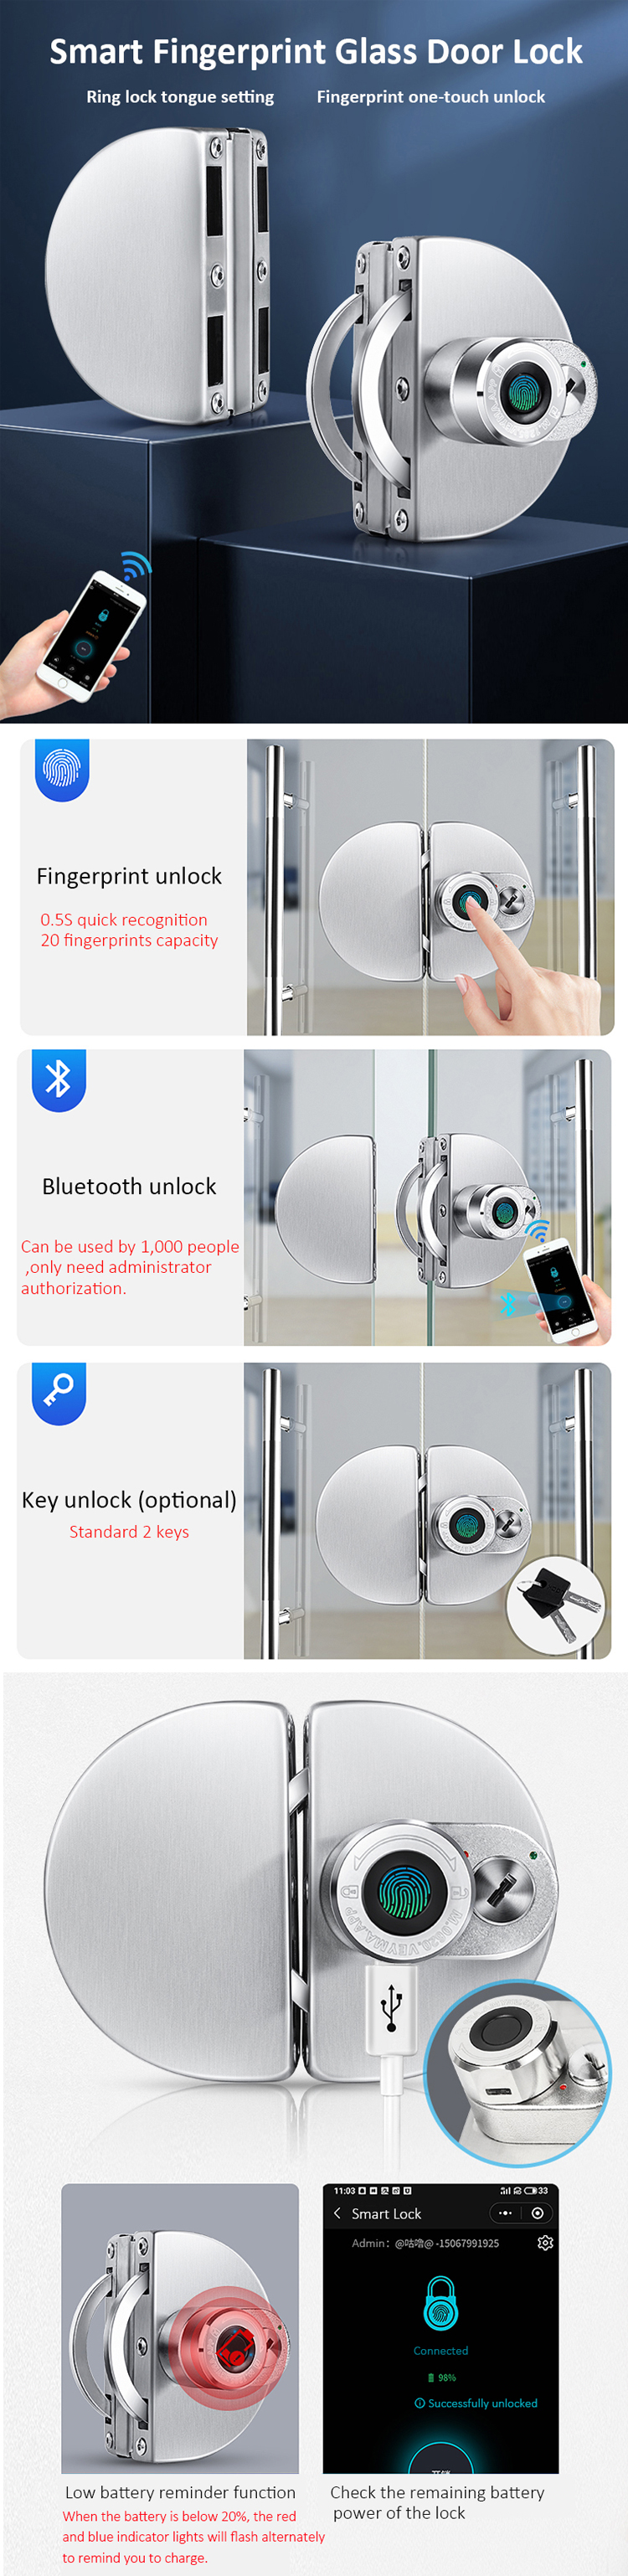 Smart biometric glass door lock